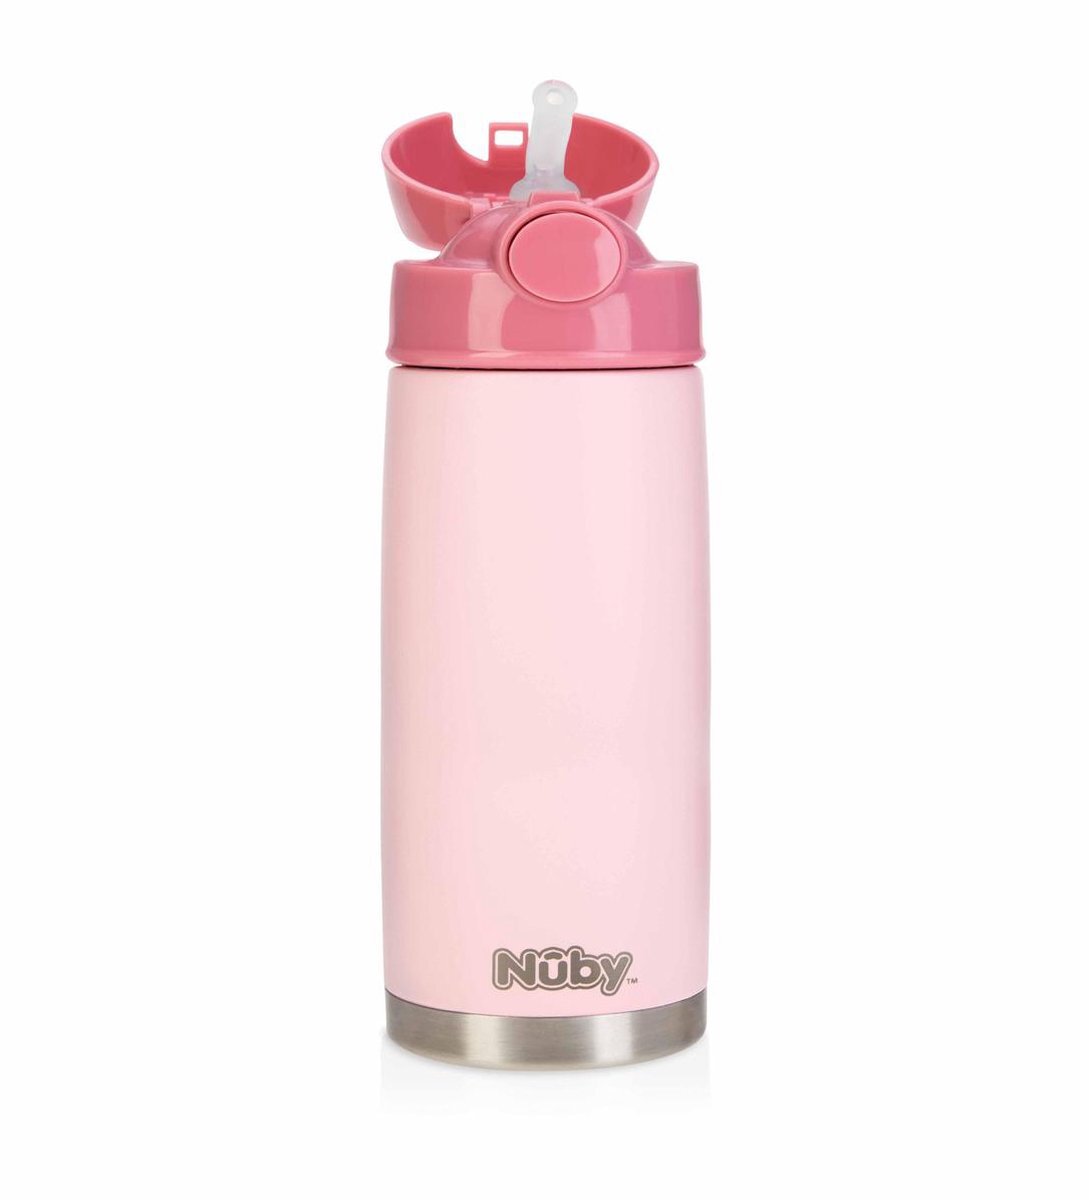 Nuby Nûby drinkrietfles in roestvrij staal 420 ml in roze